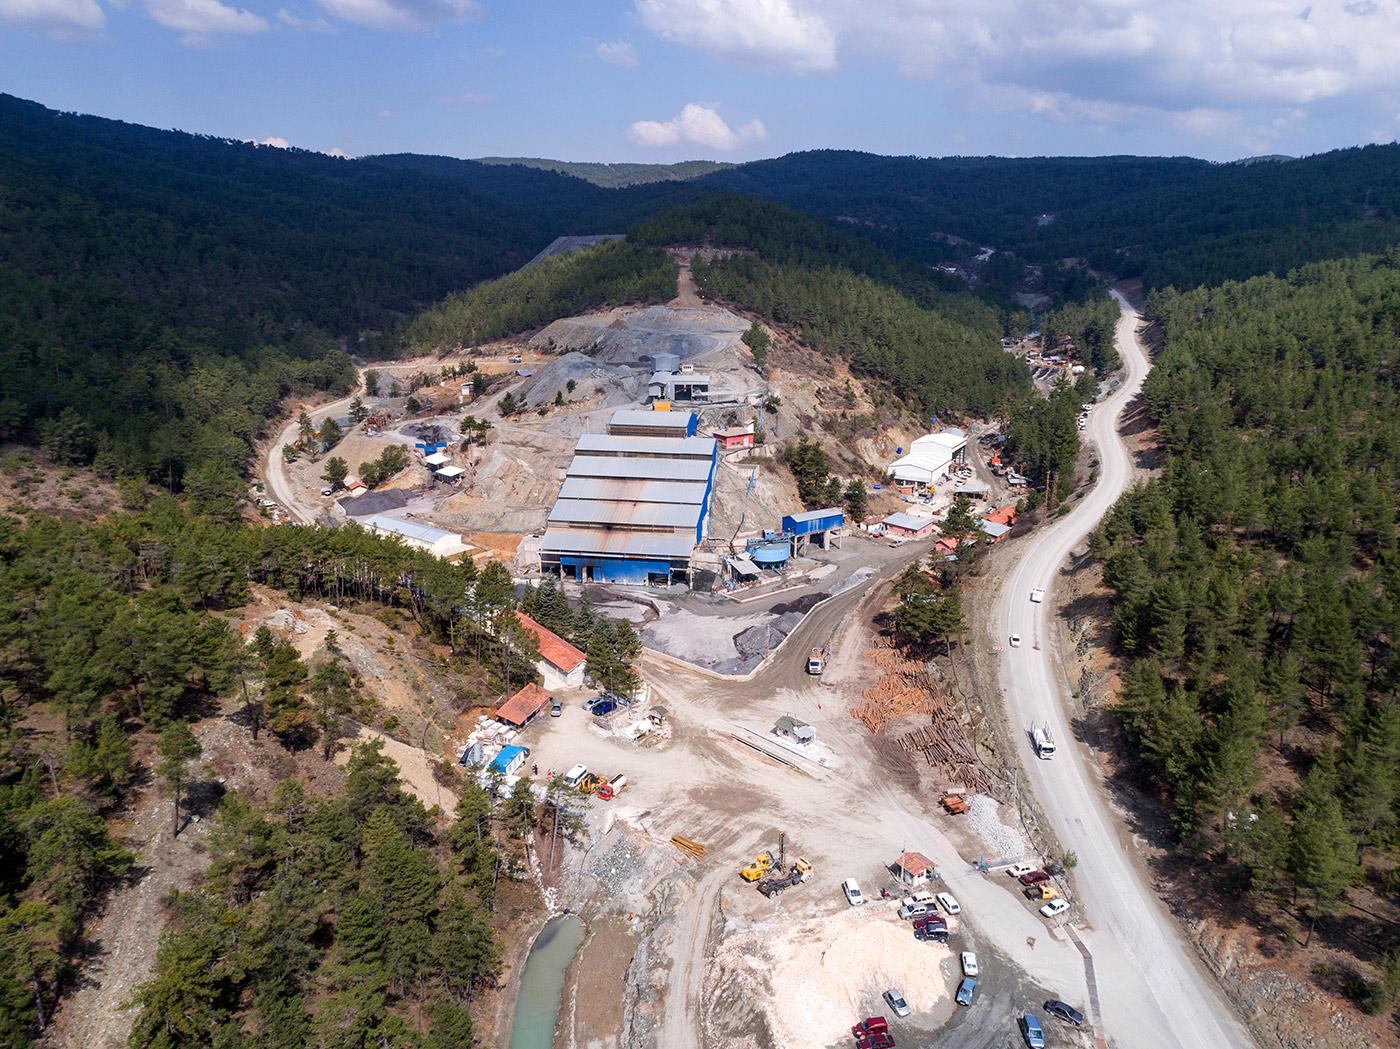 CVK Maden halka arz incelemesi Oransal Dağıtım Rota Borsa